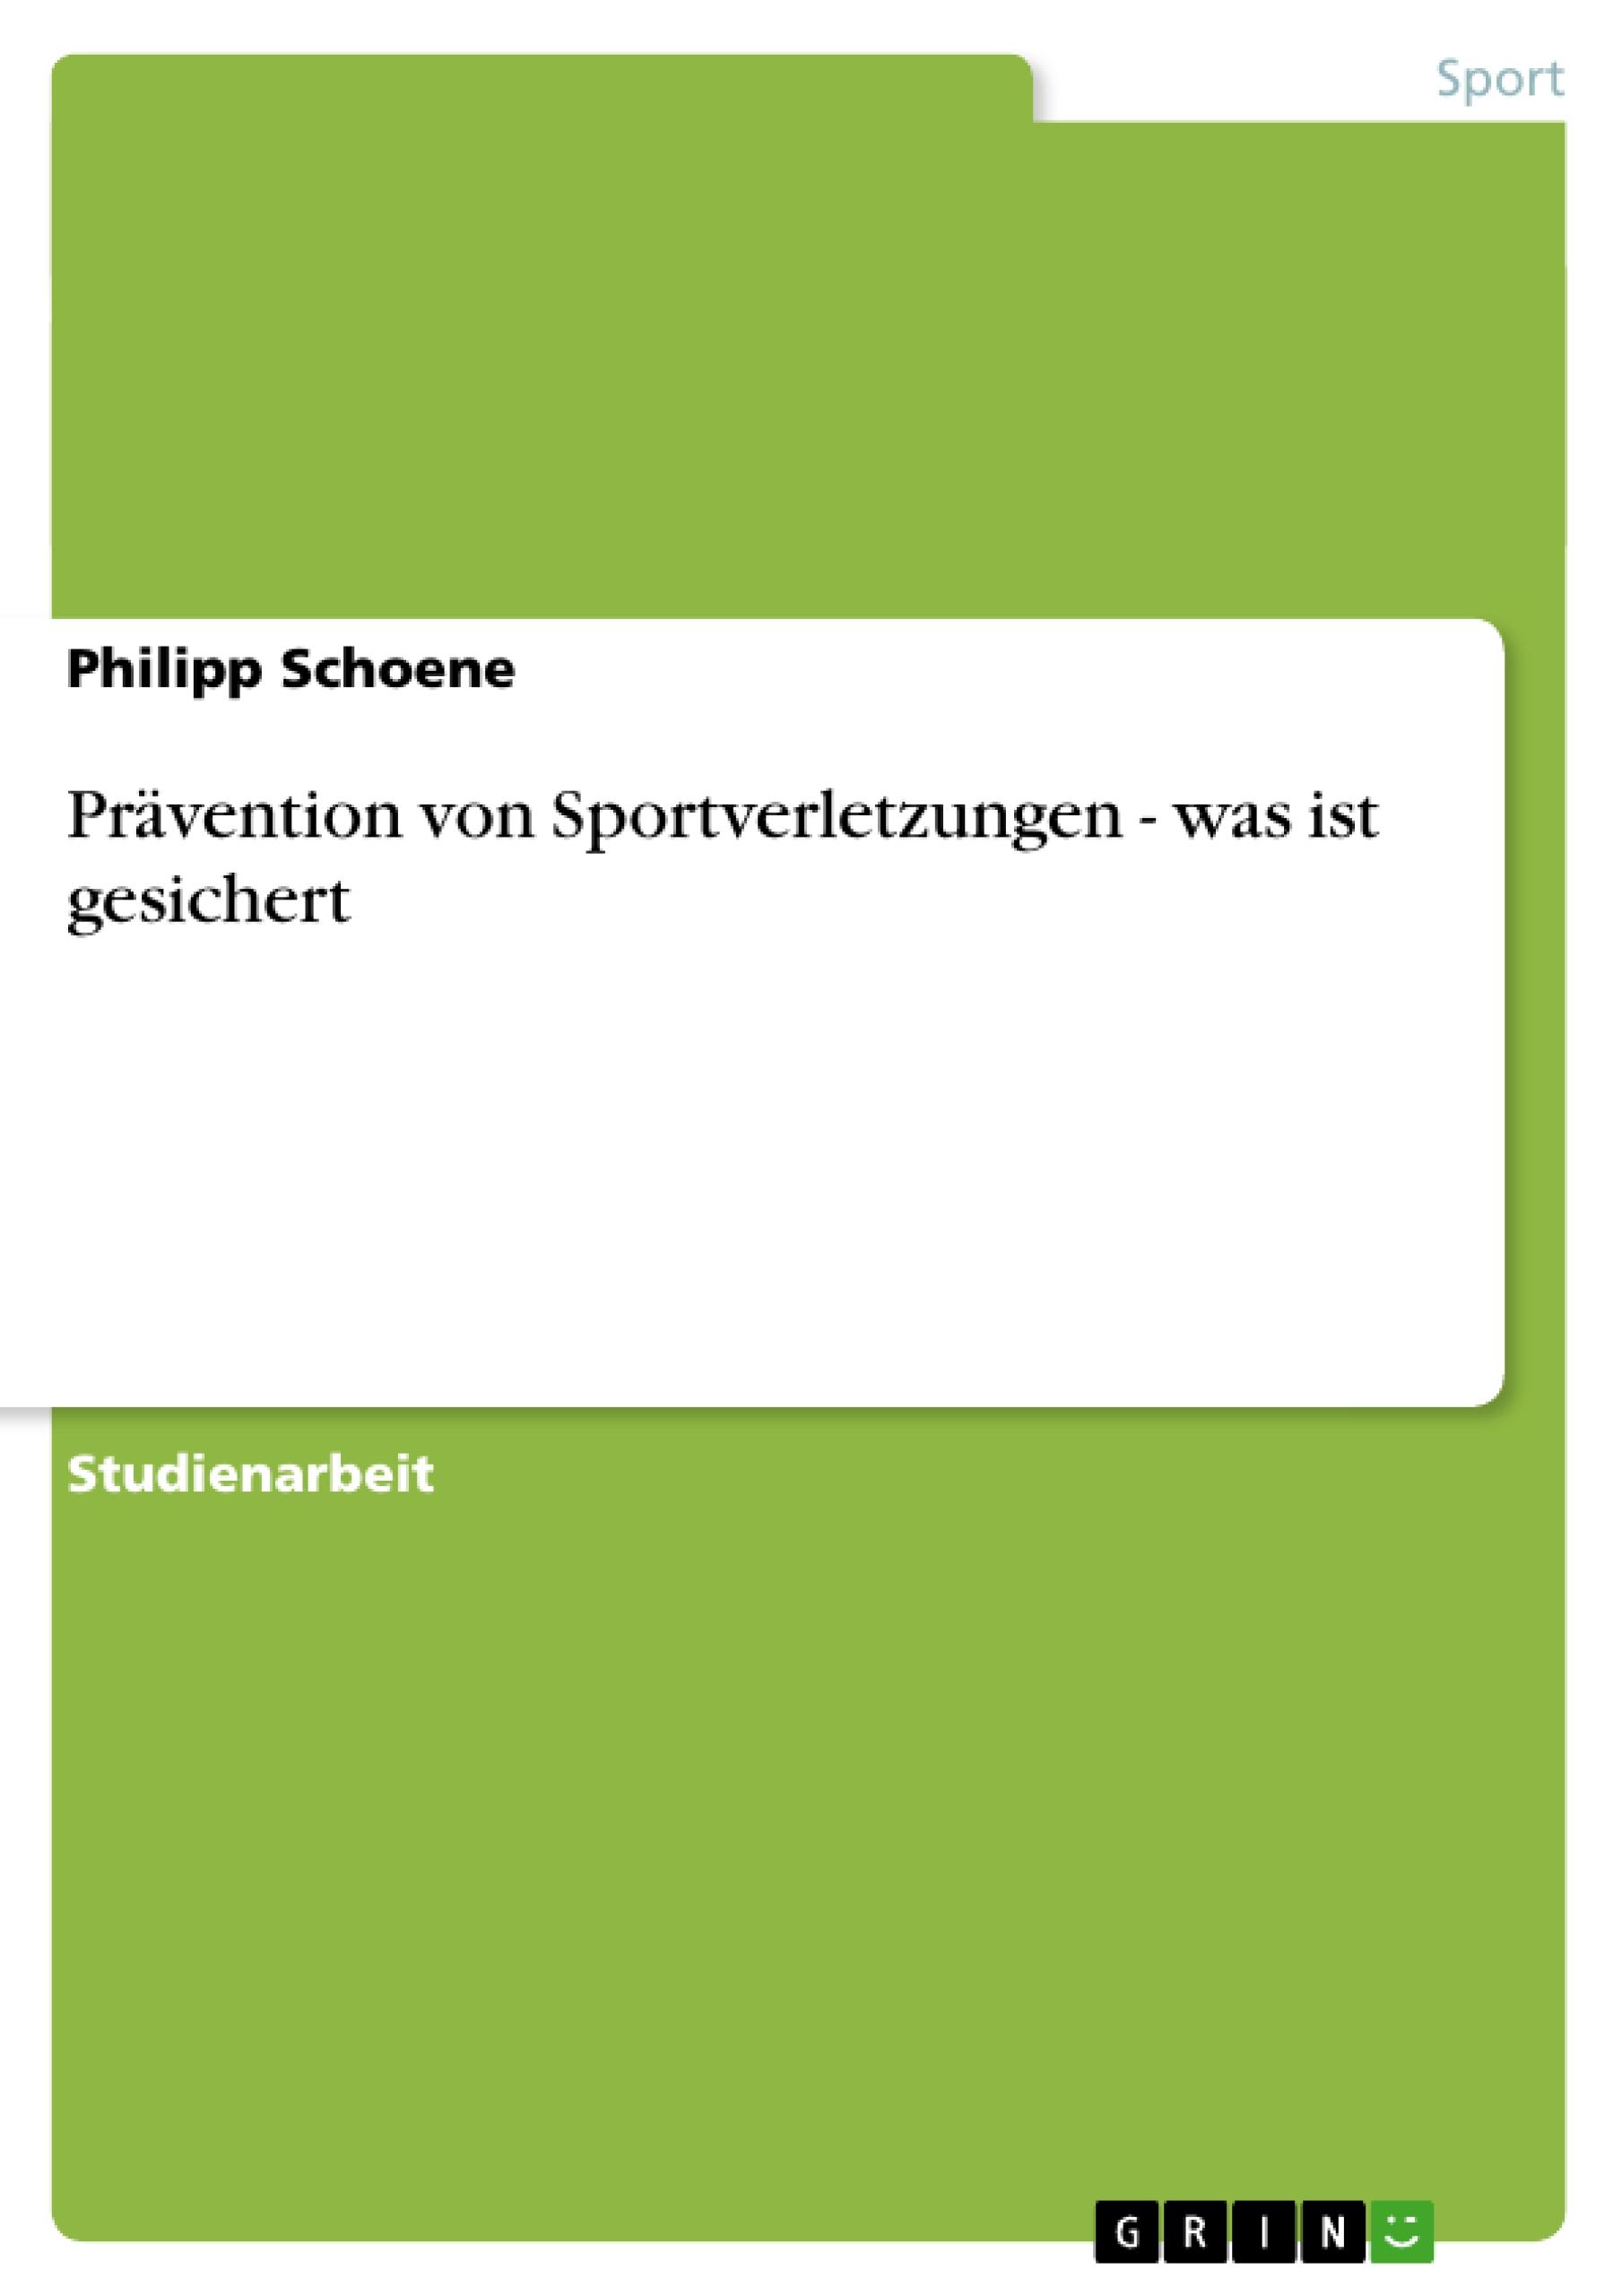 Praevention von Sportverletzungen - was ist gesichert - Schoene, Philipp